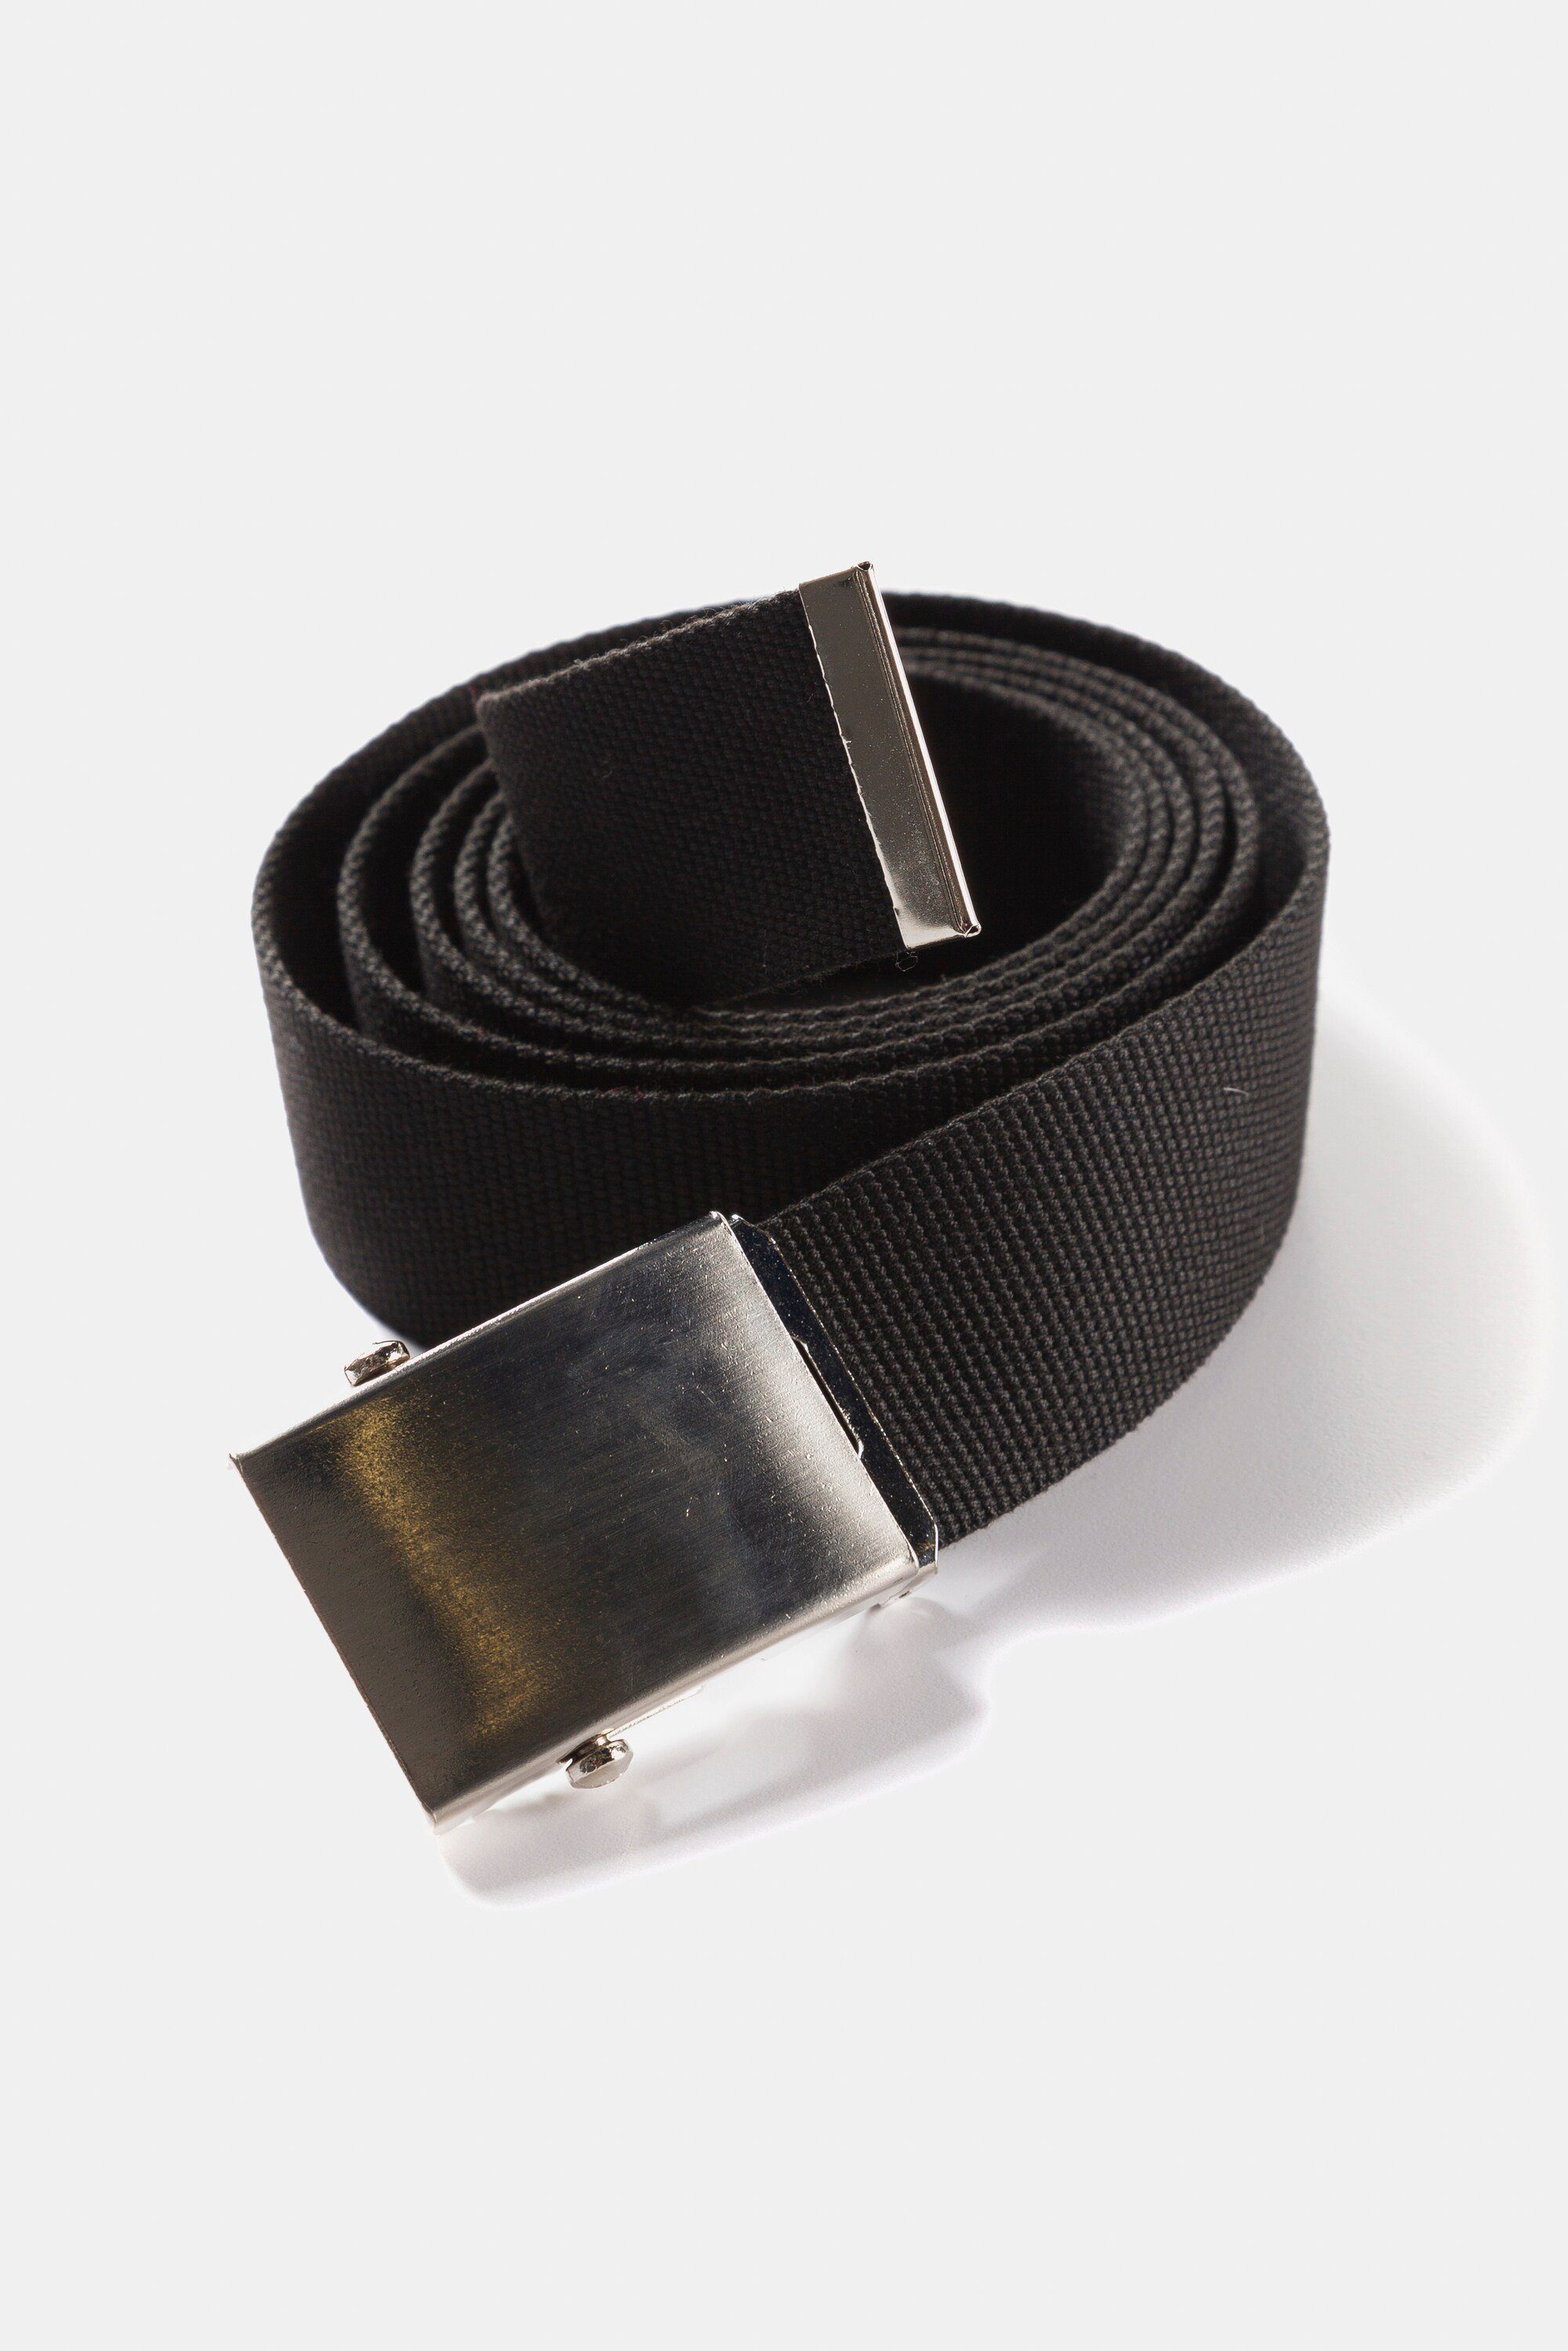 JP1880 Hüftgürtel zu kürzen einfach Metallschließe Gürtel Stoffband schwarz